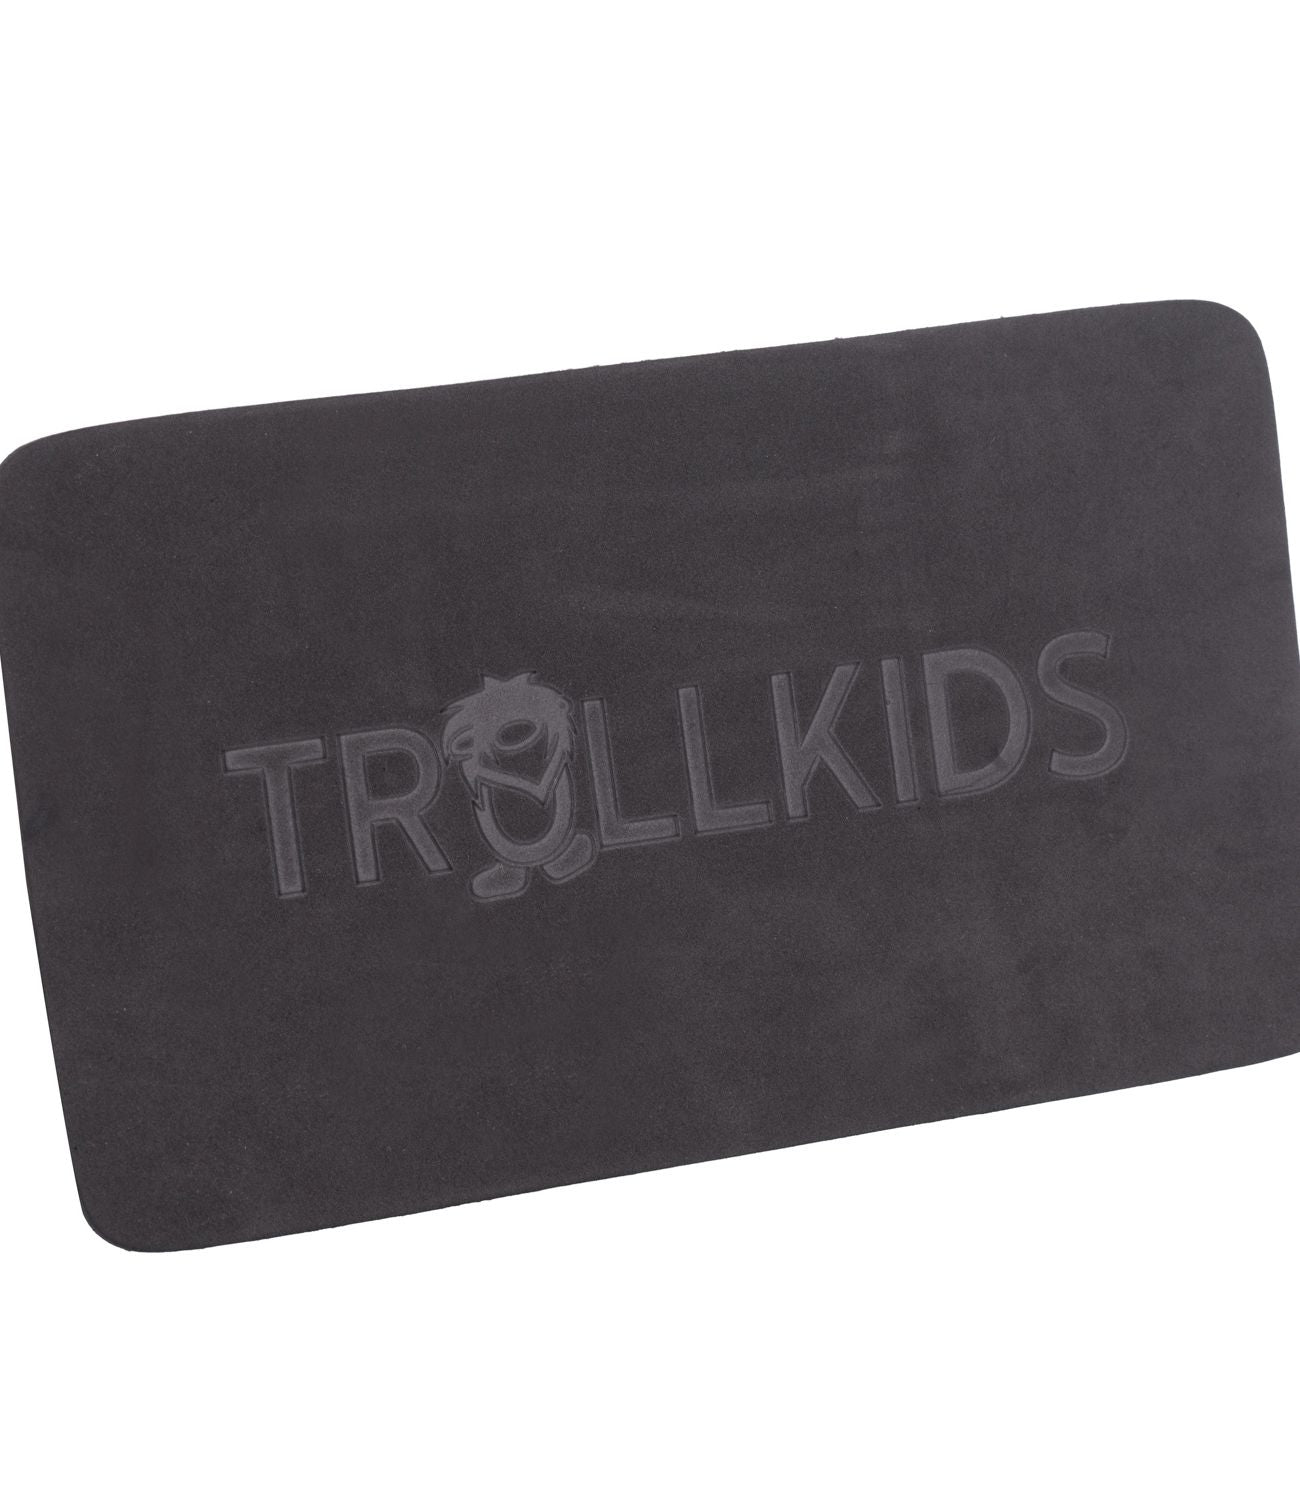 Plecak TROLLKIDS Fjell Pack